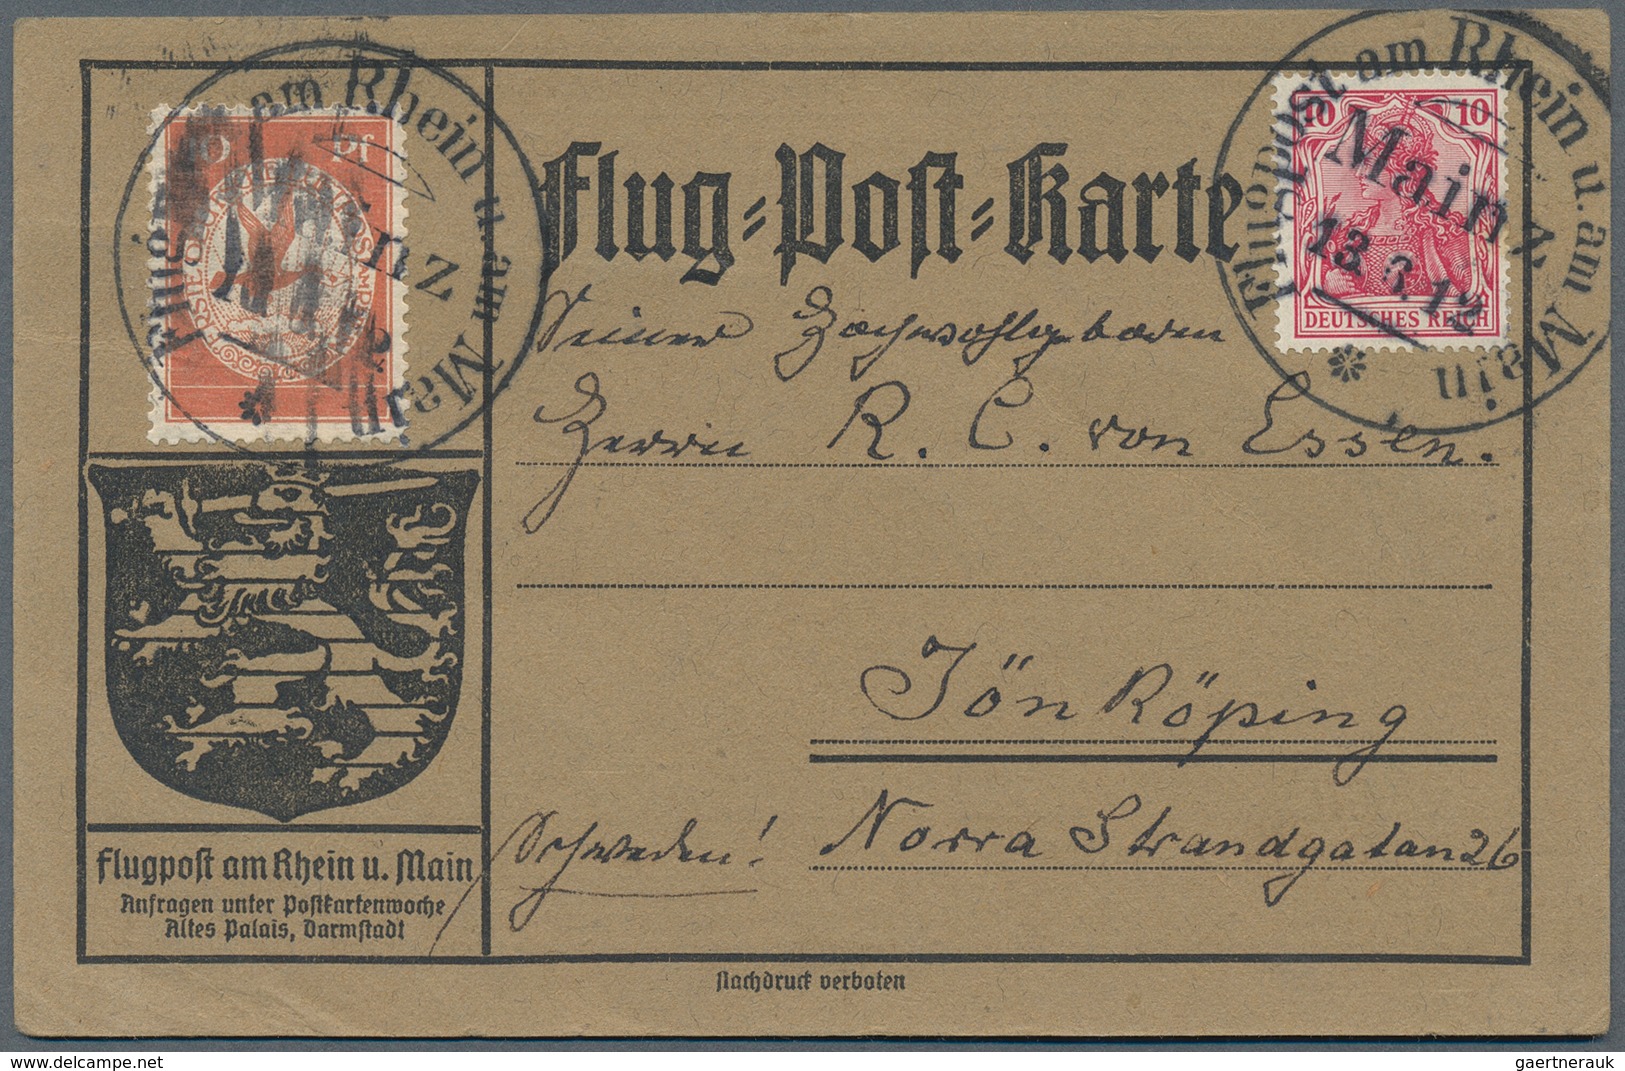 24843 Zeppelinpost Deutschland: 1912, umfangreiche Sammlung "Flugpost Rhein/Main" mit ca. 135 Karten mit d